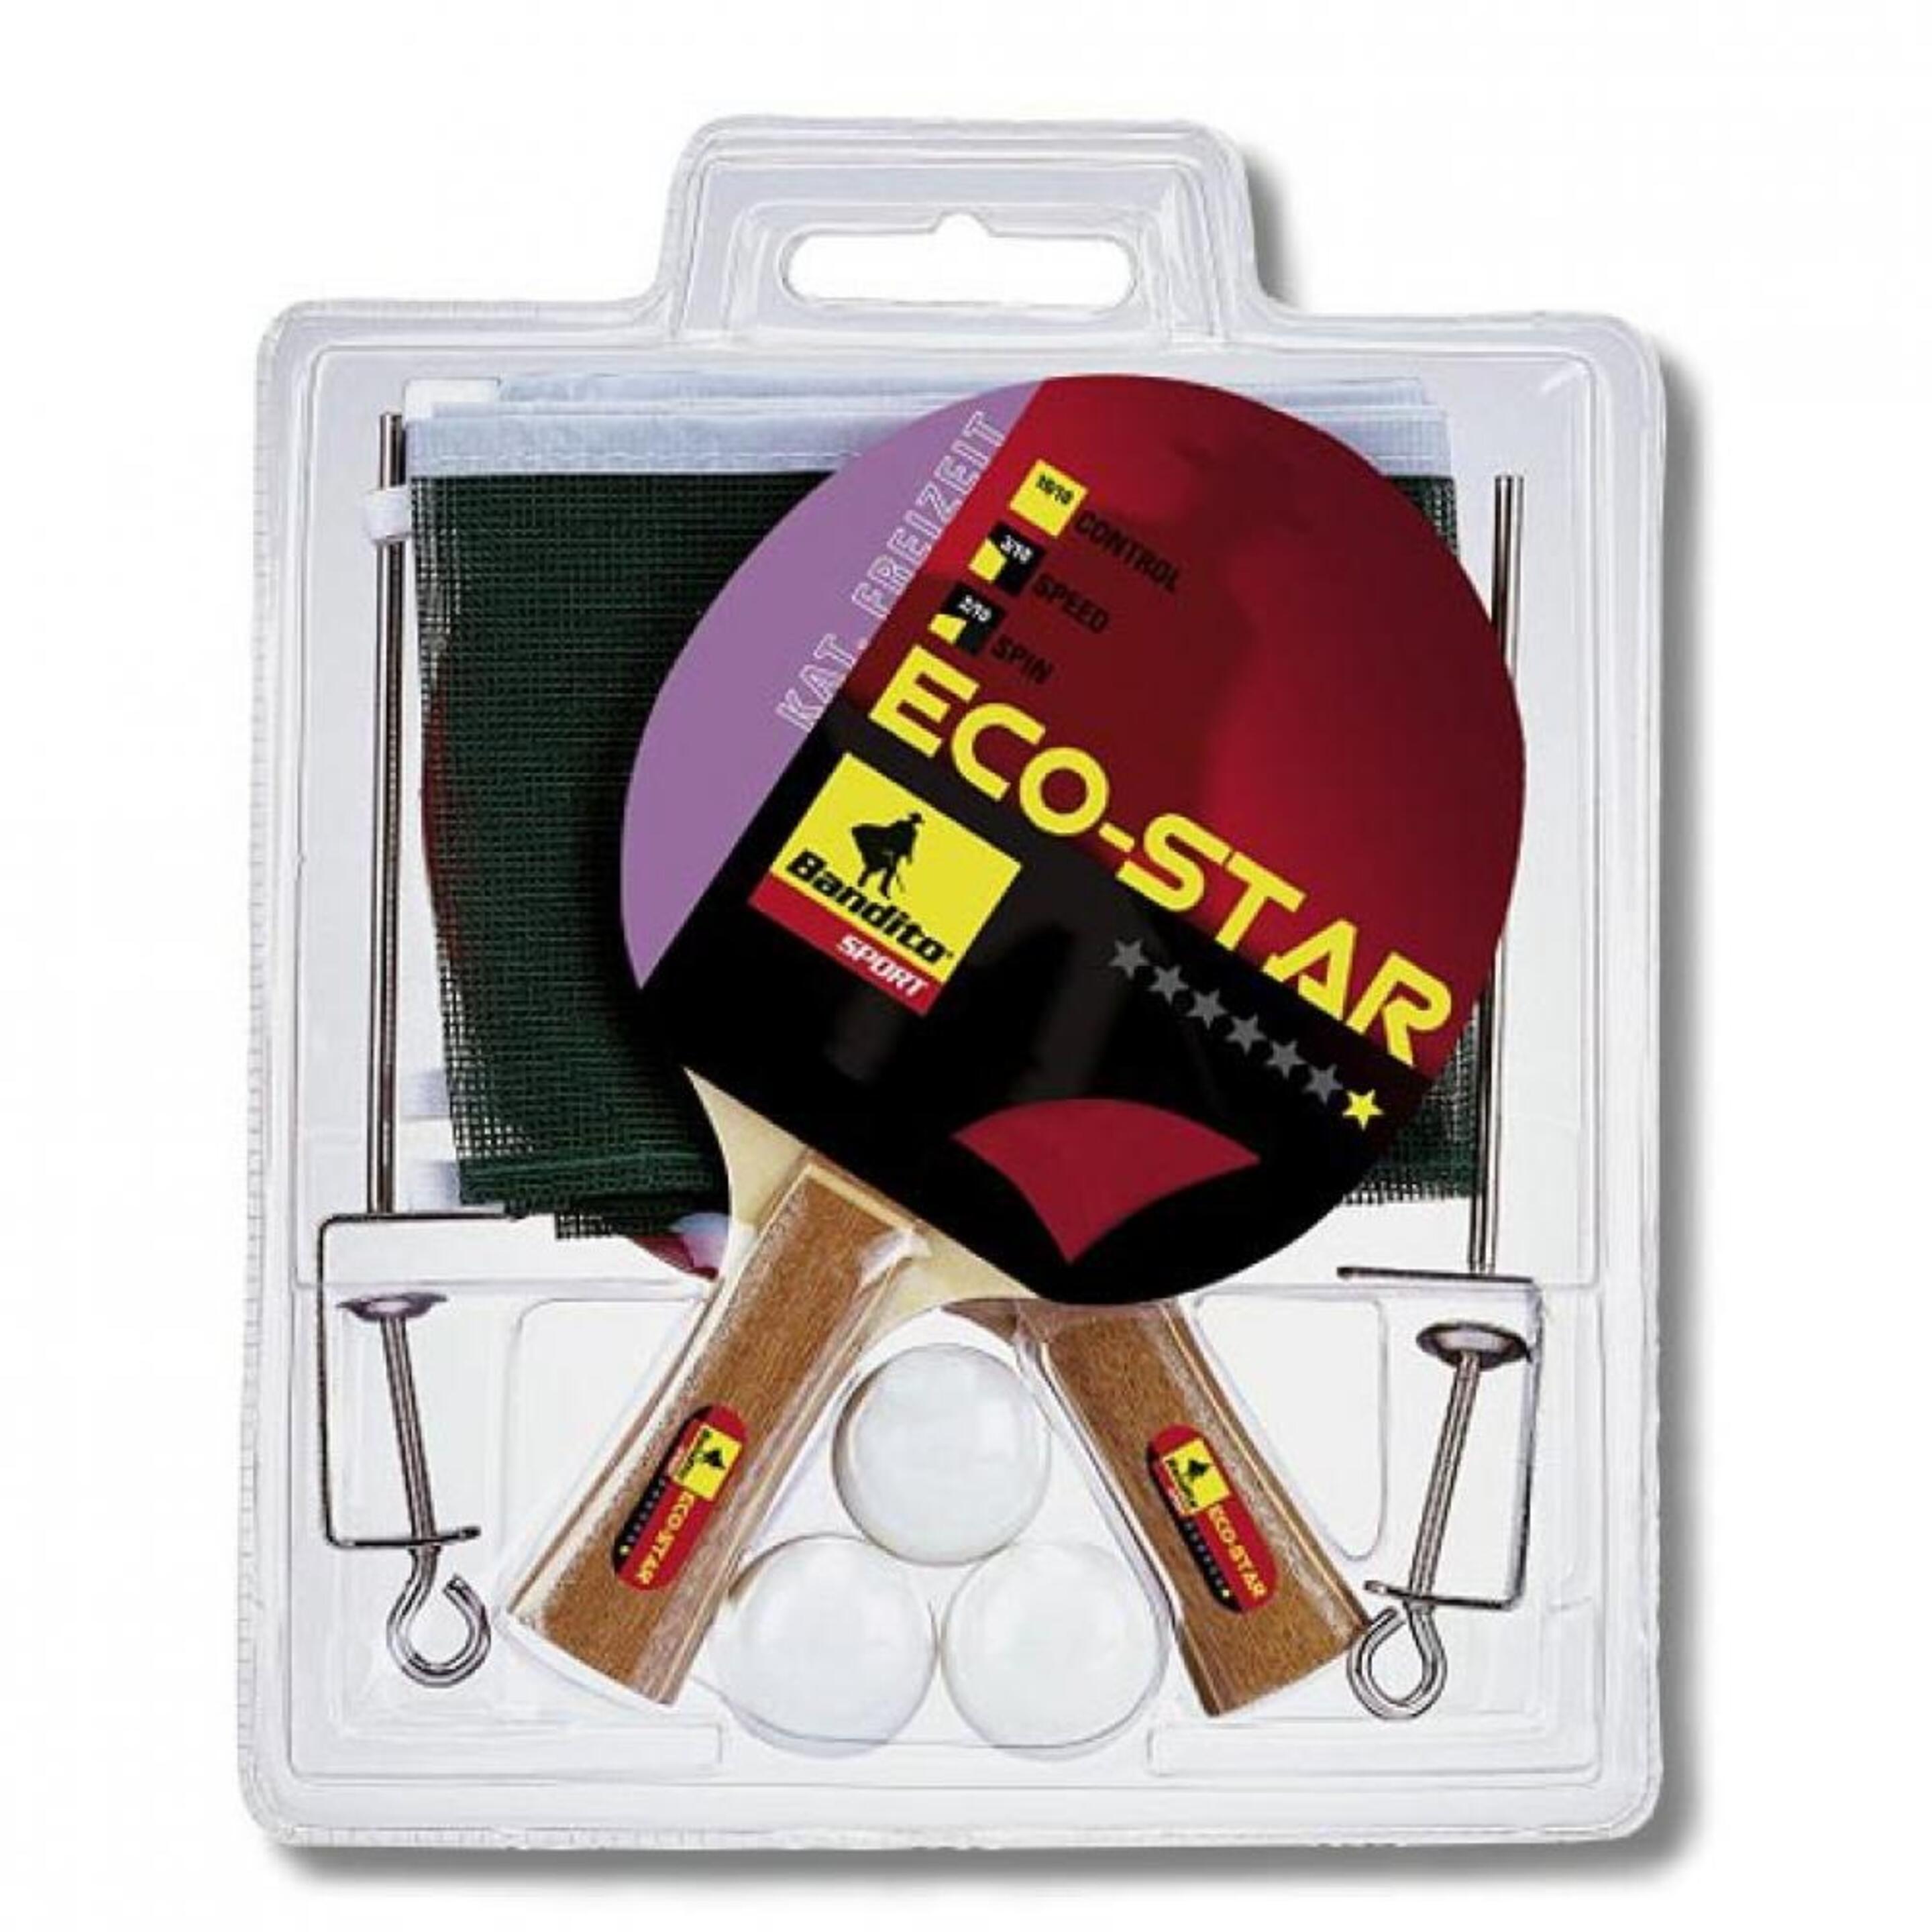 Pack 2 Pala Ping Pong + 3 Bolas + Red Bandito Sport Eco-star 4110.01 - Negro - Pack 2 Pala Ping Pong + 3 Bolas + R  MKP